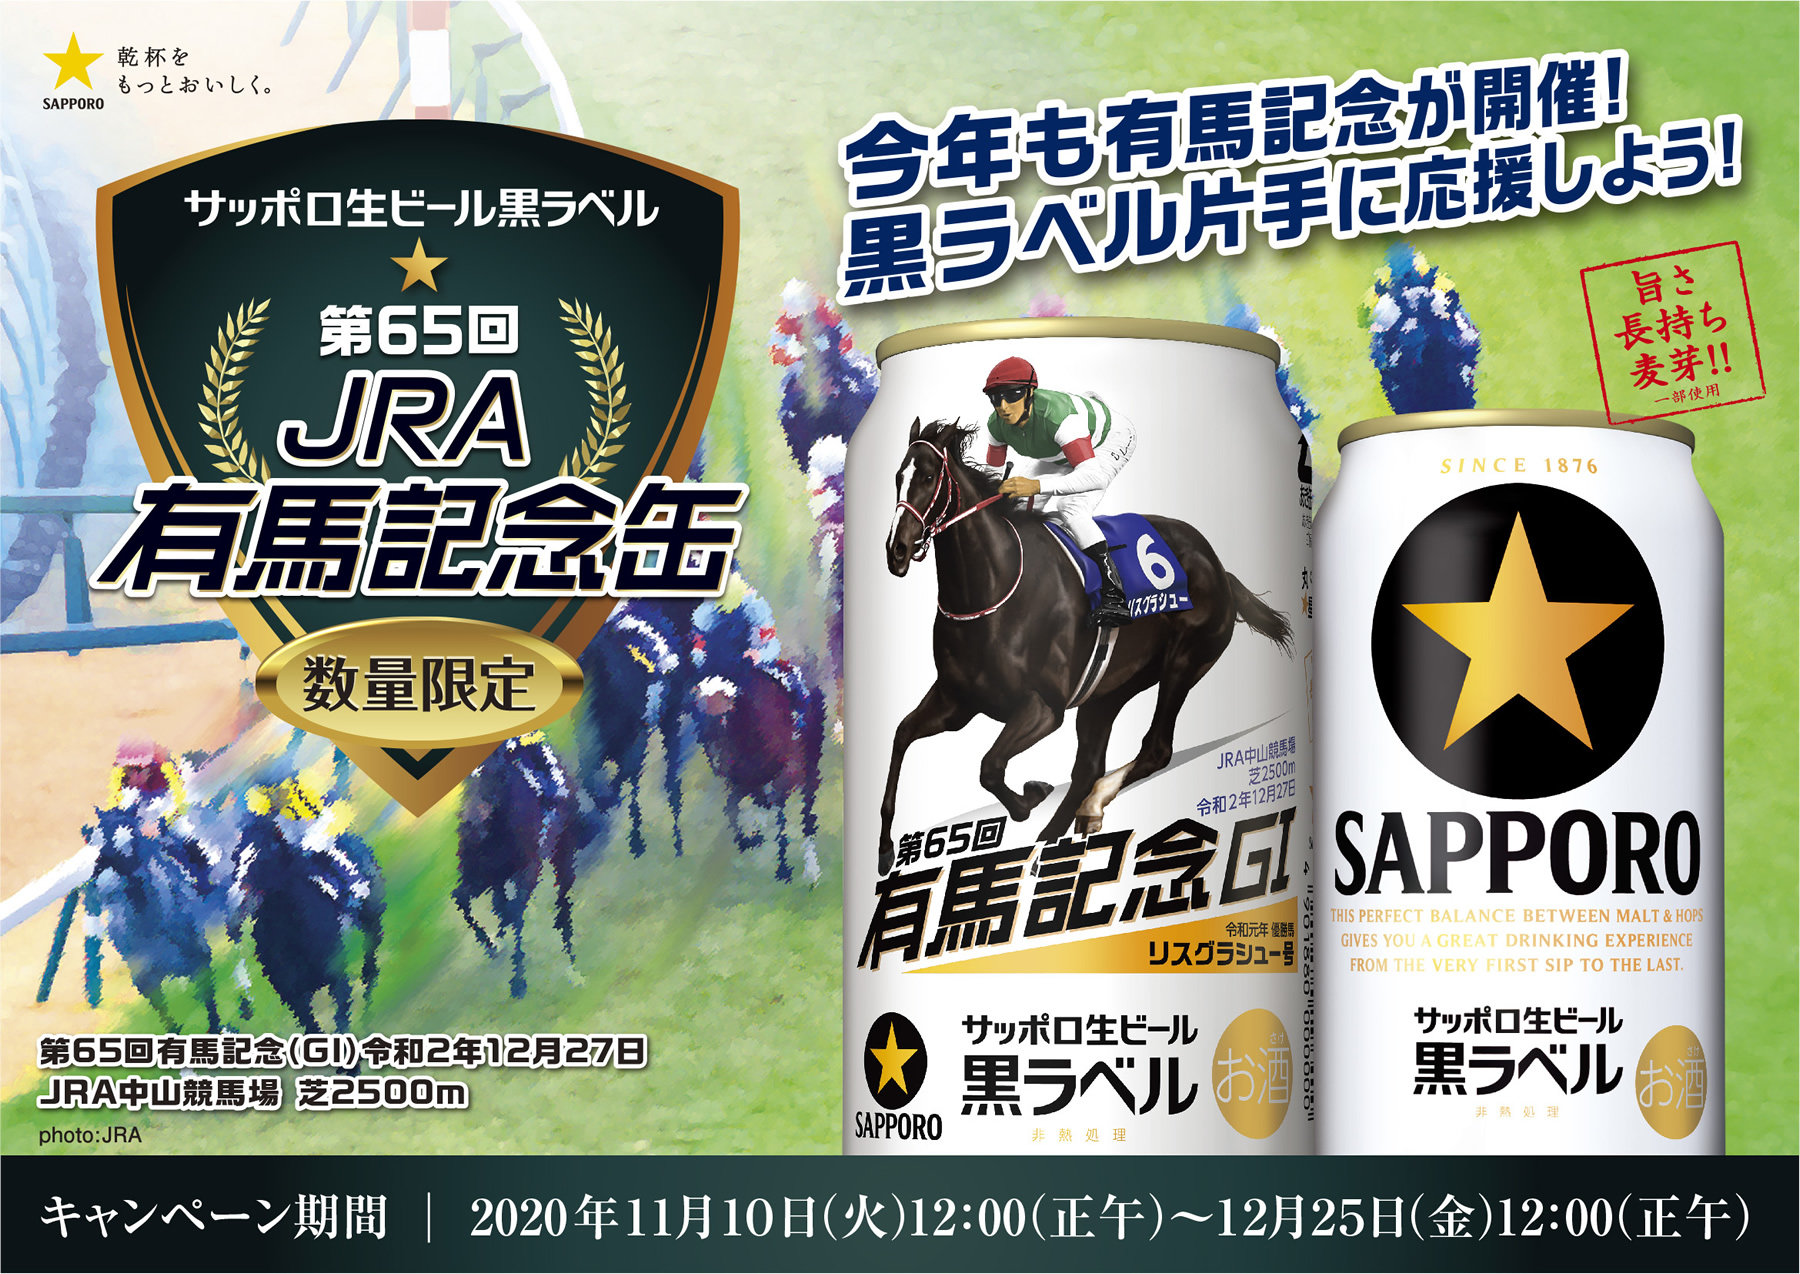 【正規品定番】JRA 2021年GⅠレースQUOカード コンプリートブック 500円分×26種 有馬記念キャンペーン 送料無料。 クオカード